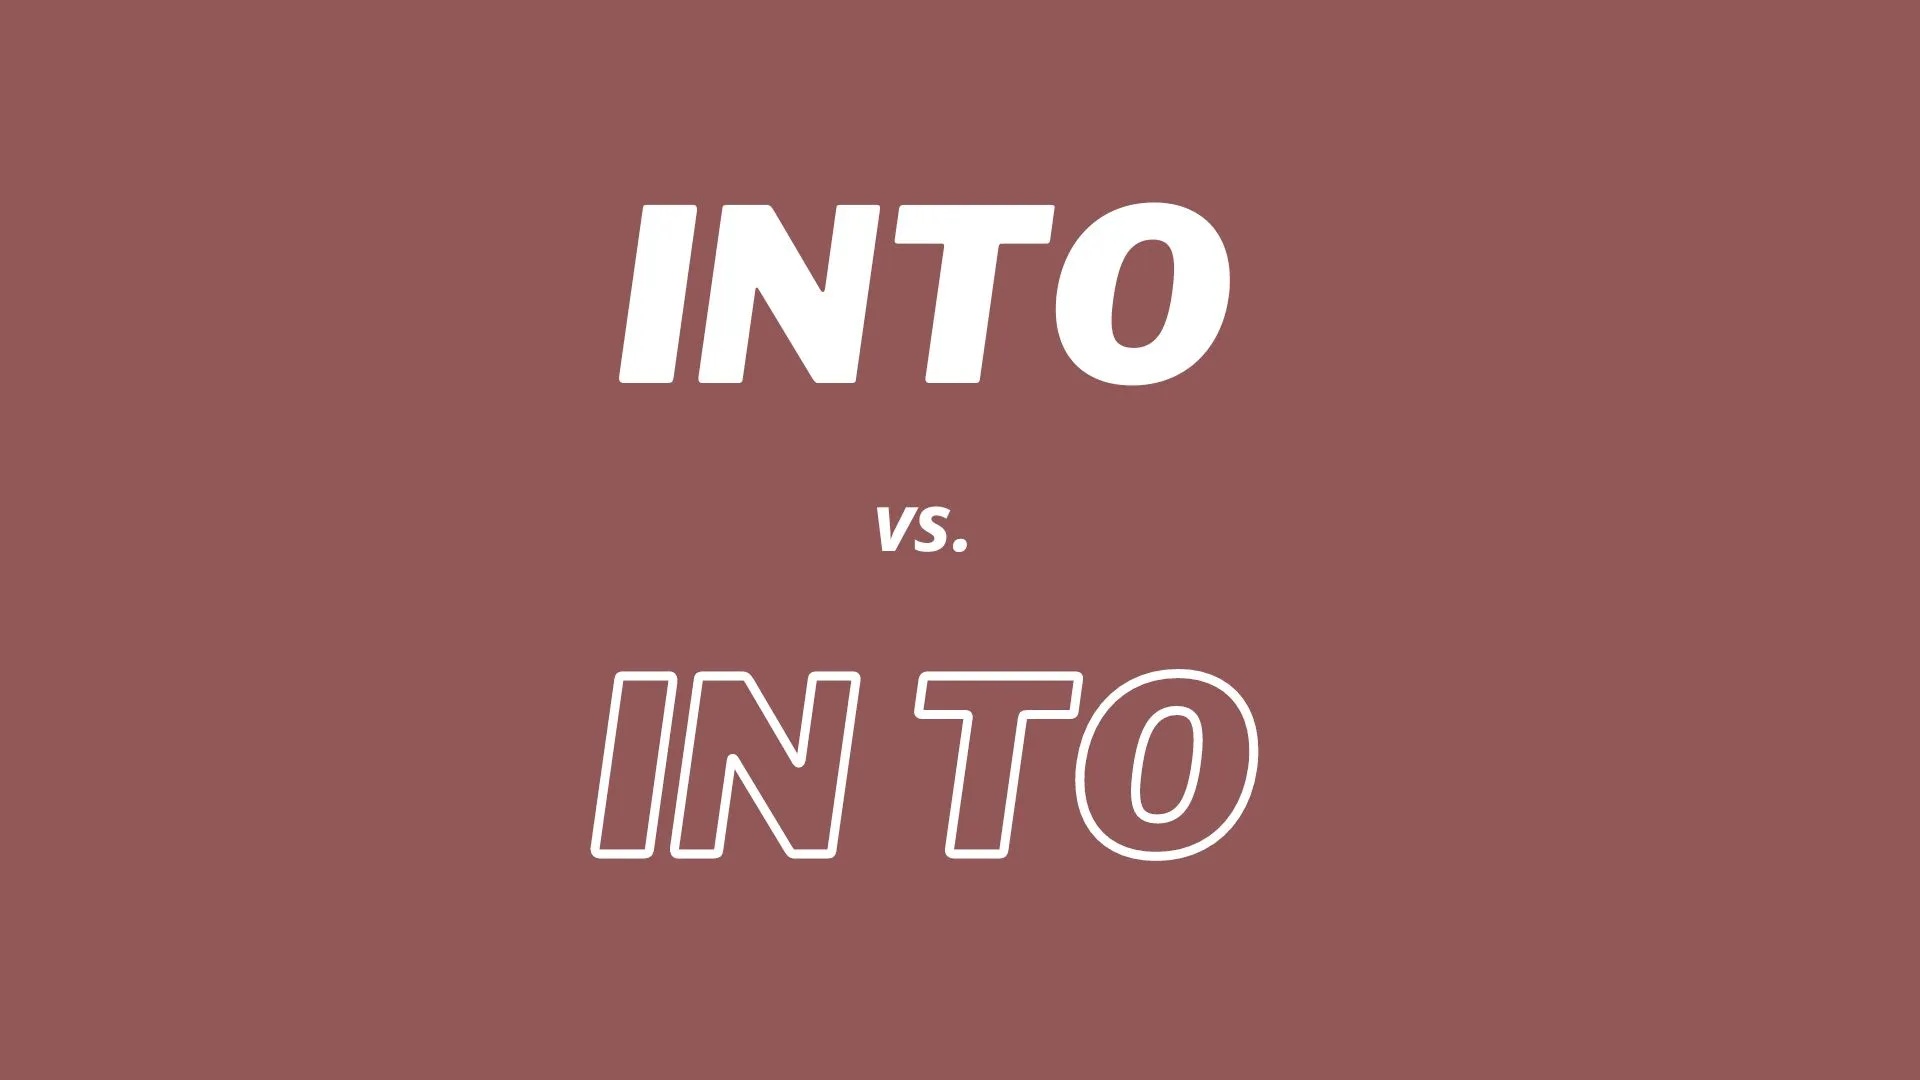 語彙用語 "into" と "in to" の視覚比較と定義。